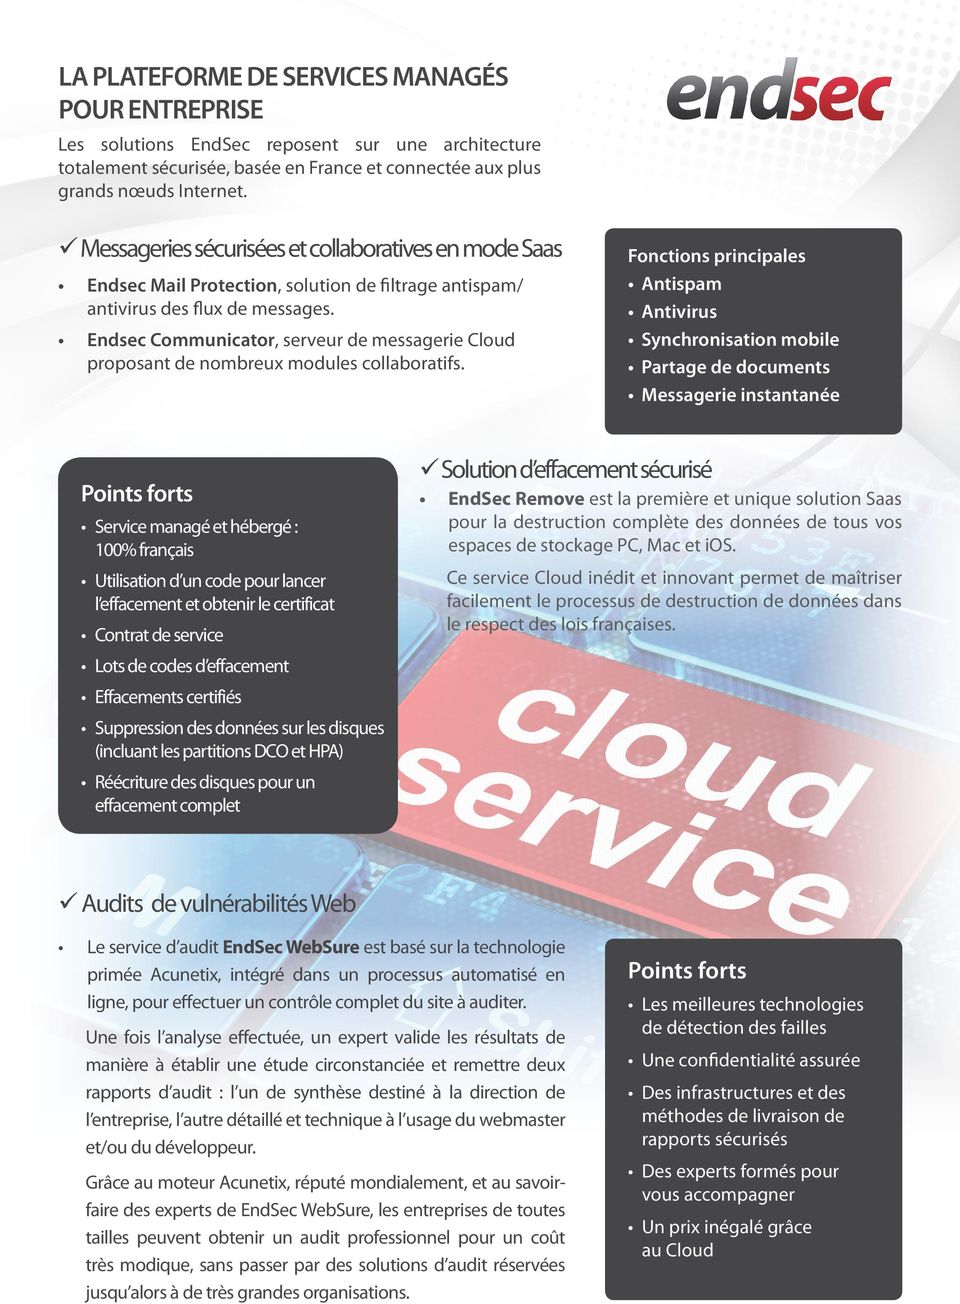 Endsec Communicator, serveur de messagerie Cloud proposant de nombreux modules collaboratifs.